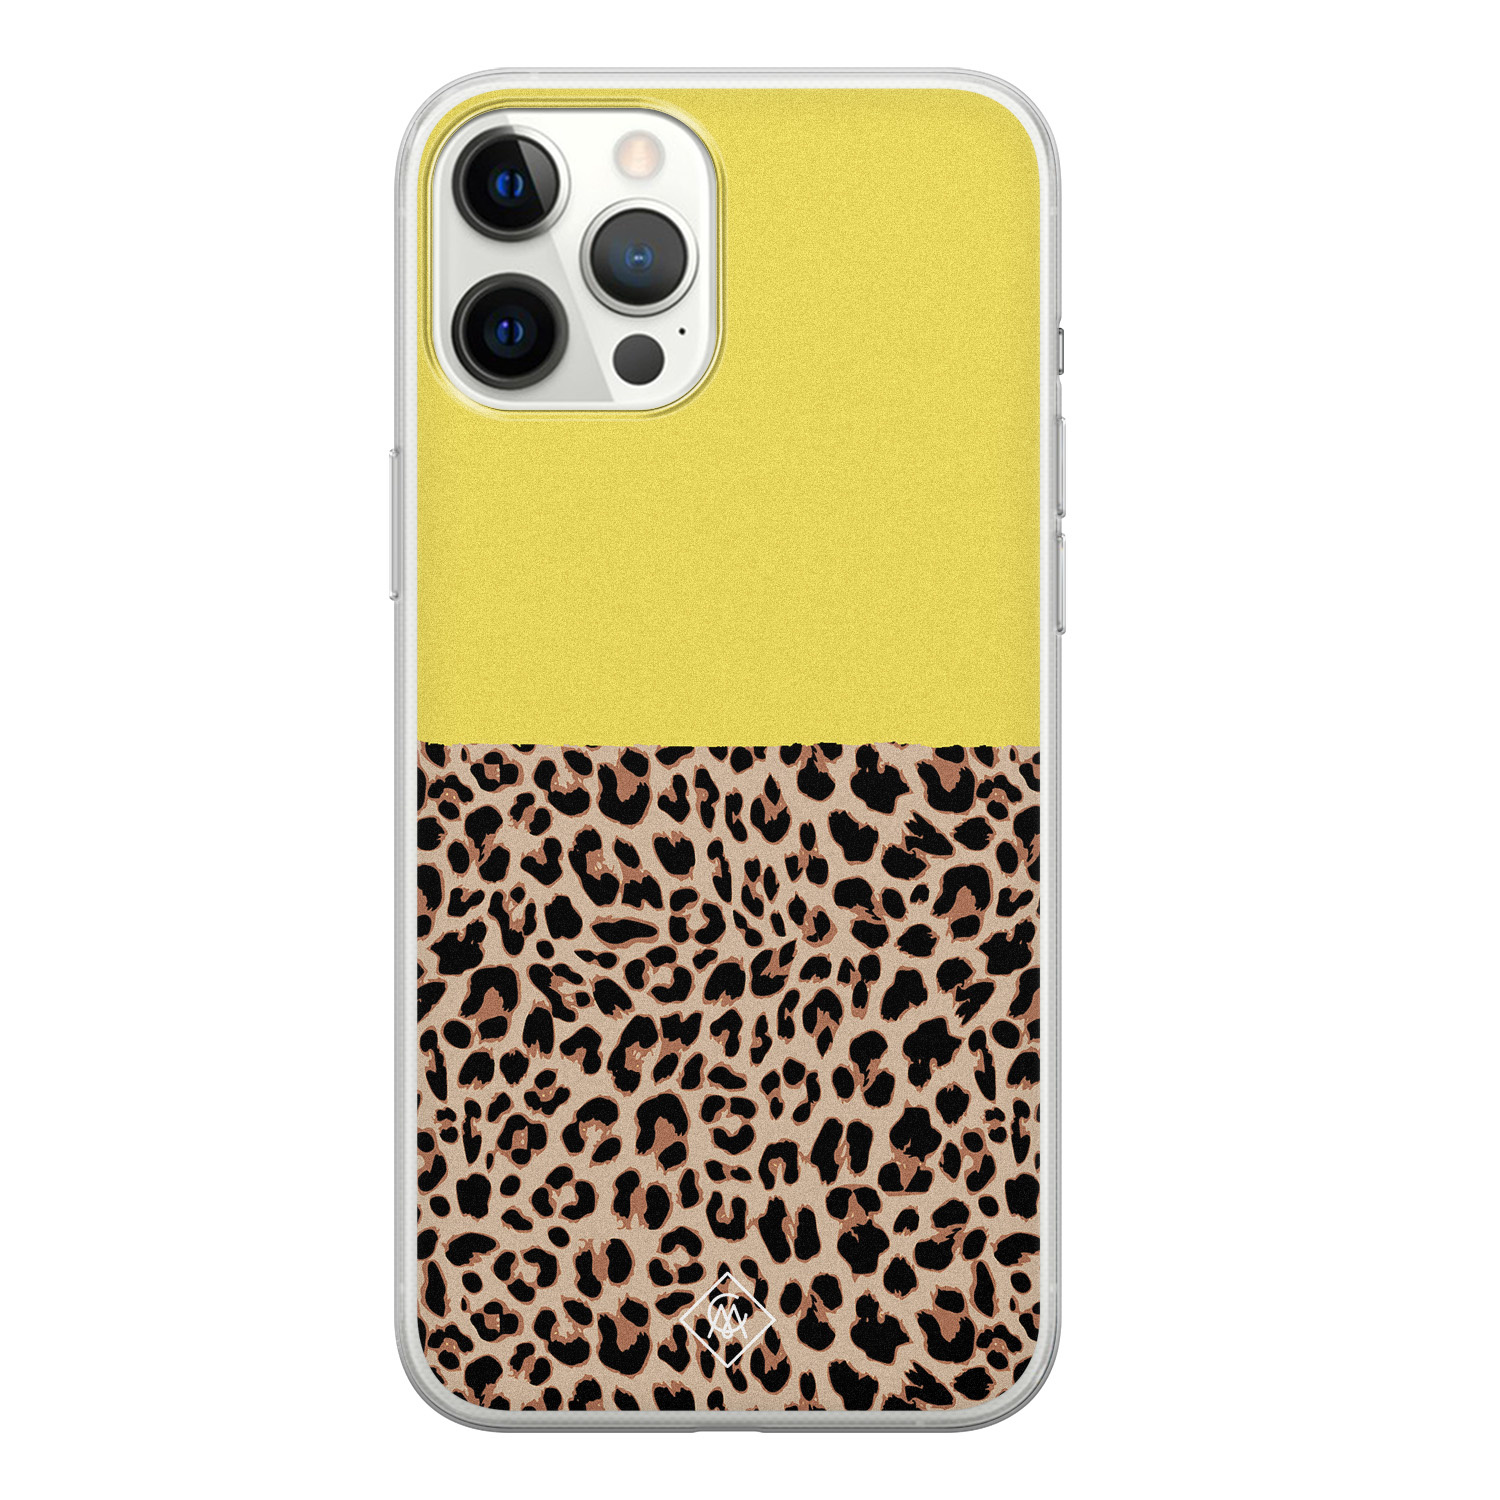 iPhone 12 Pro Max siliconen hoesje - Luipaard geel